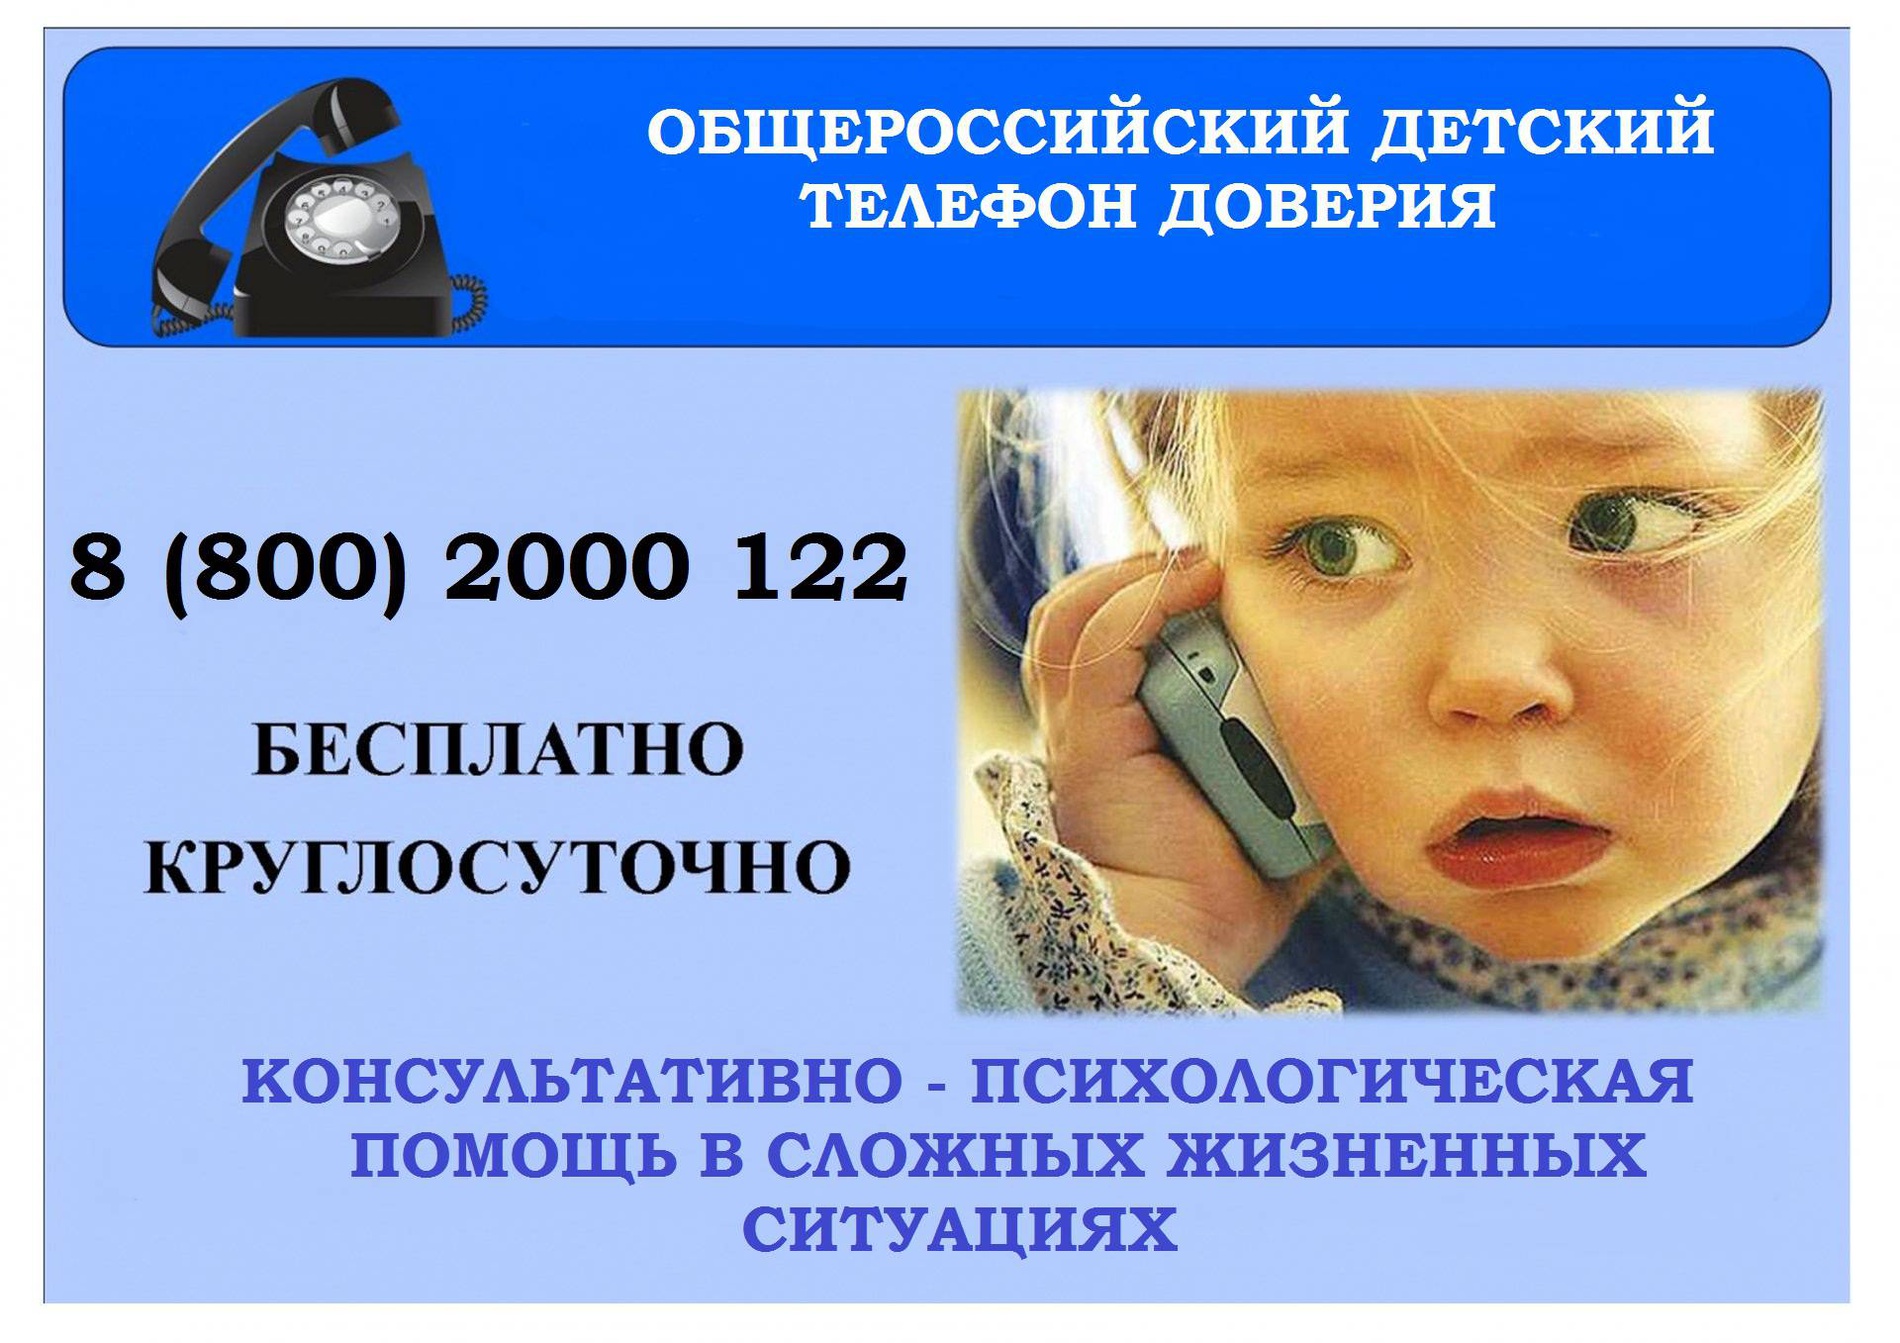 Ребёнок в опасности телефонная линия